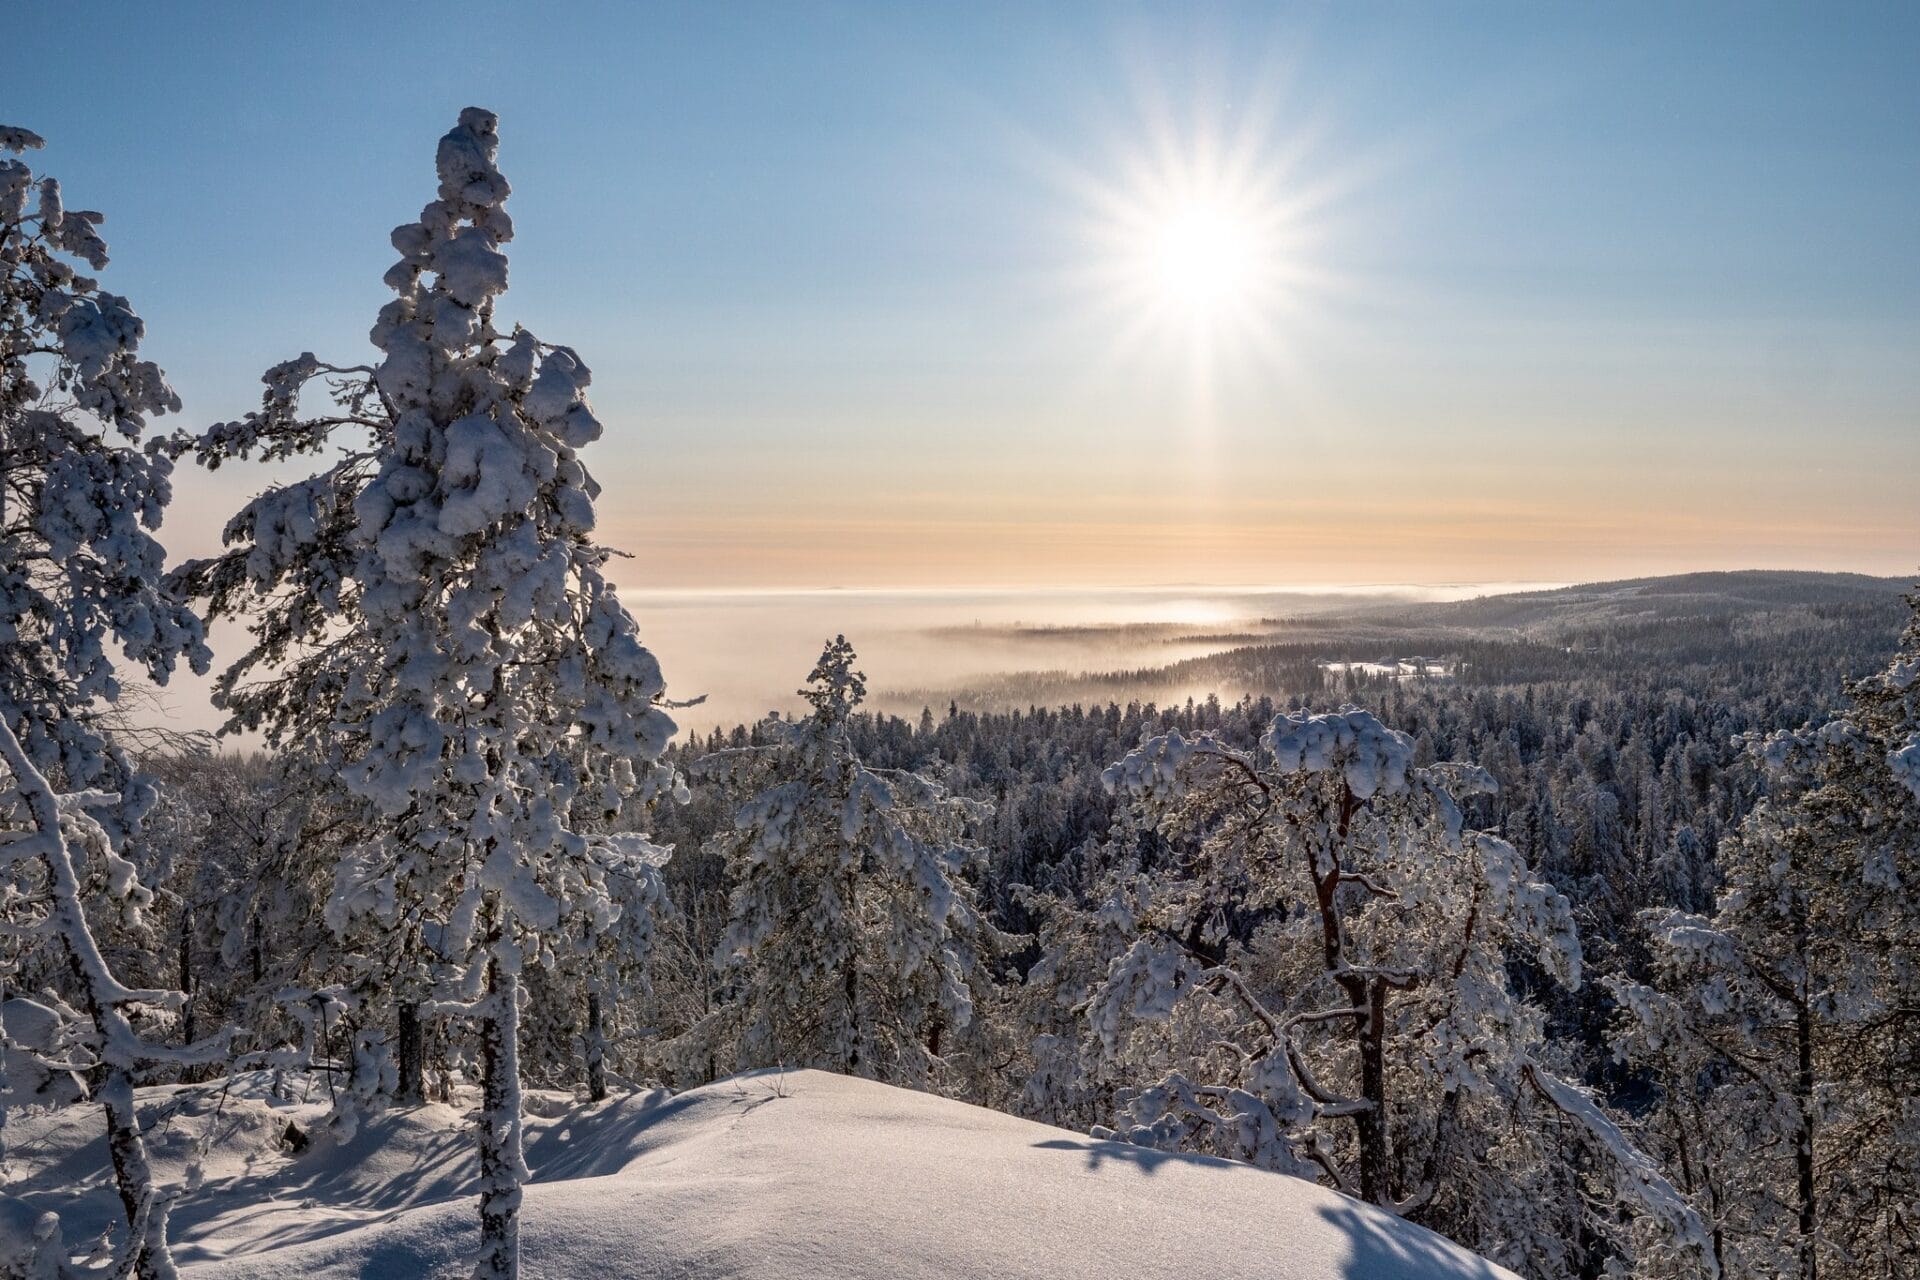 Seikkailukuva. Talvista maisemaa Vuokatinvaaralta. Lumisia puita ja auringonpaiste. Kuvituskuva.